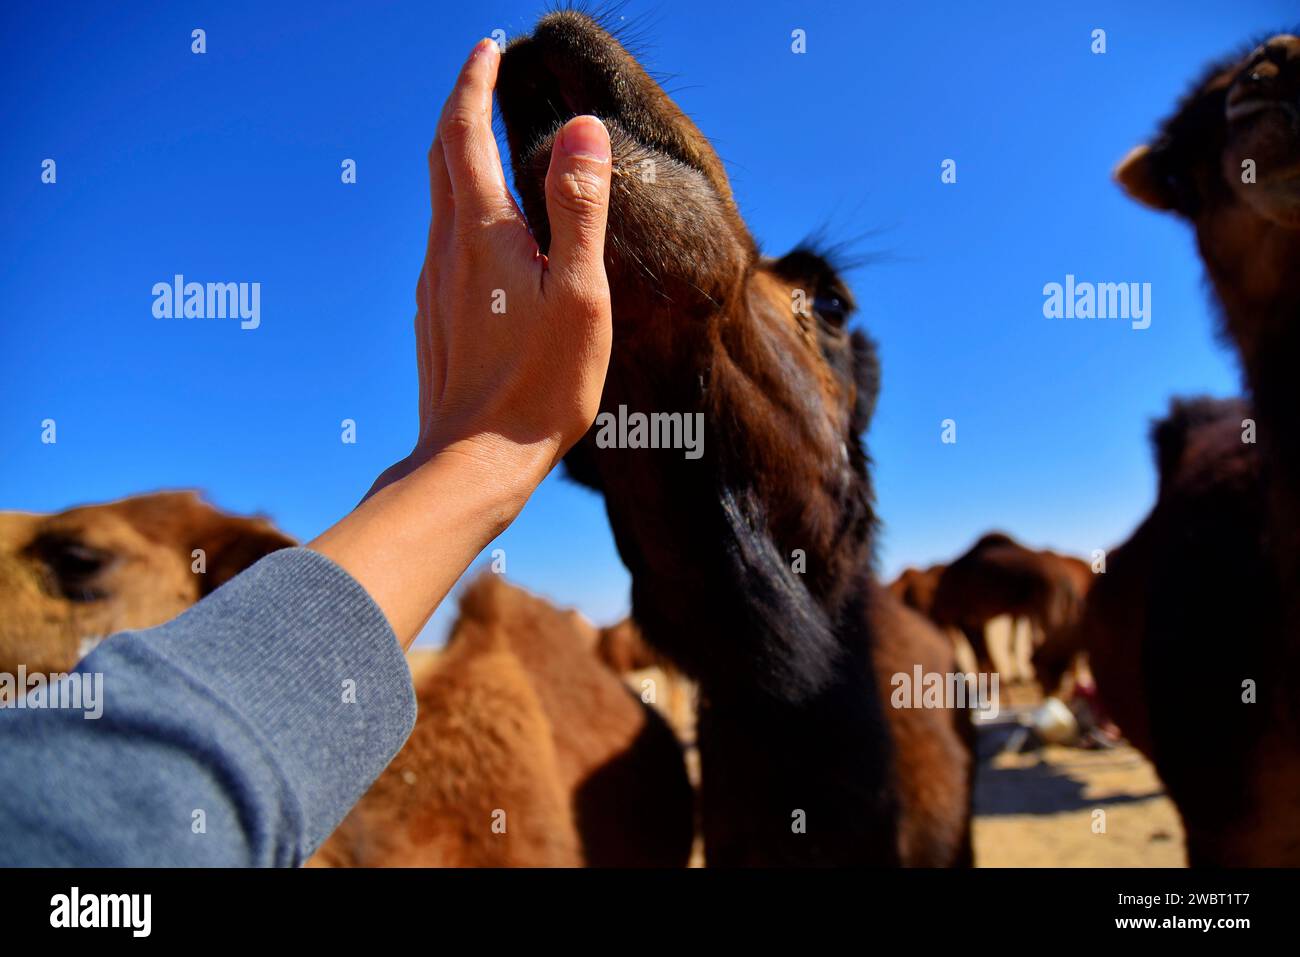 Rencontre rapprochée avec une caravane de chameaux sauvages dans le désert de Maranjab, Aran o Bidgol, province d'Ispahan, ne de Kashan, Iran. Tapoter un chameau. Banque D'Images